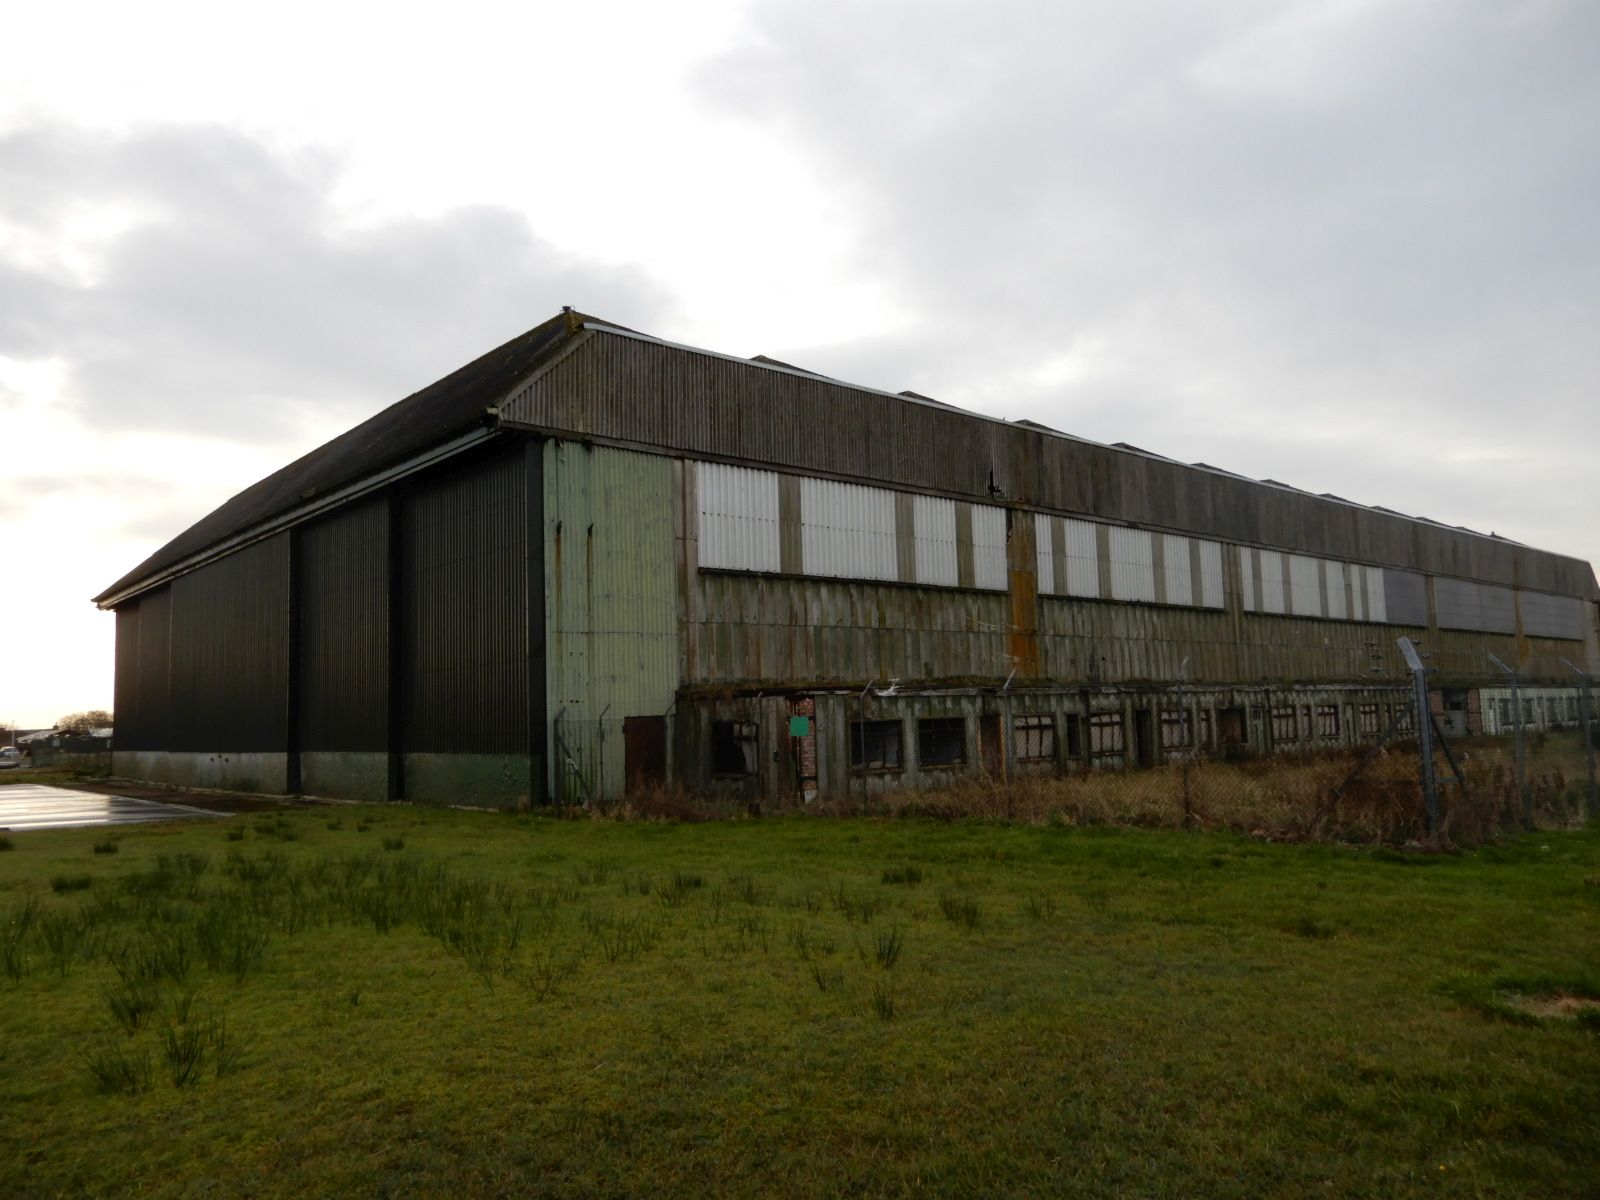 Letiště Wick (EGPC), druhoválečné hangáry pro bombardéry Lancaster. Ty malé budovy podél hangáru jsou márnice, kde se ukládali oběti po bombardování.